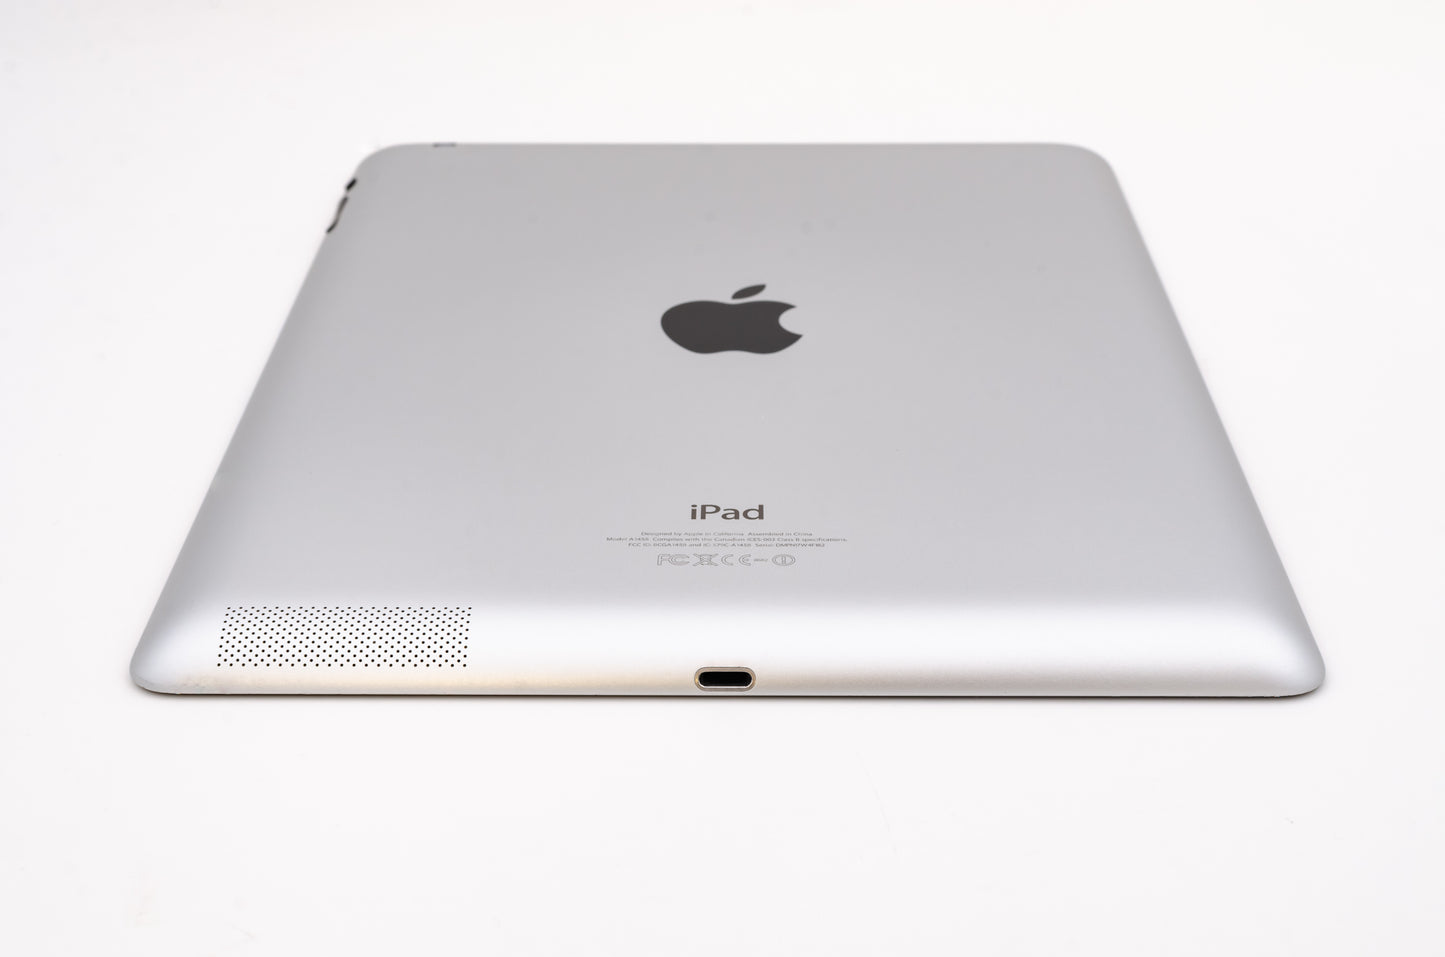 apple-2012-9.7-inch-ipad-4-a1458-silver/black-5